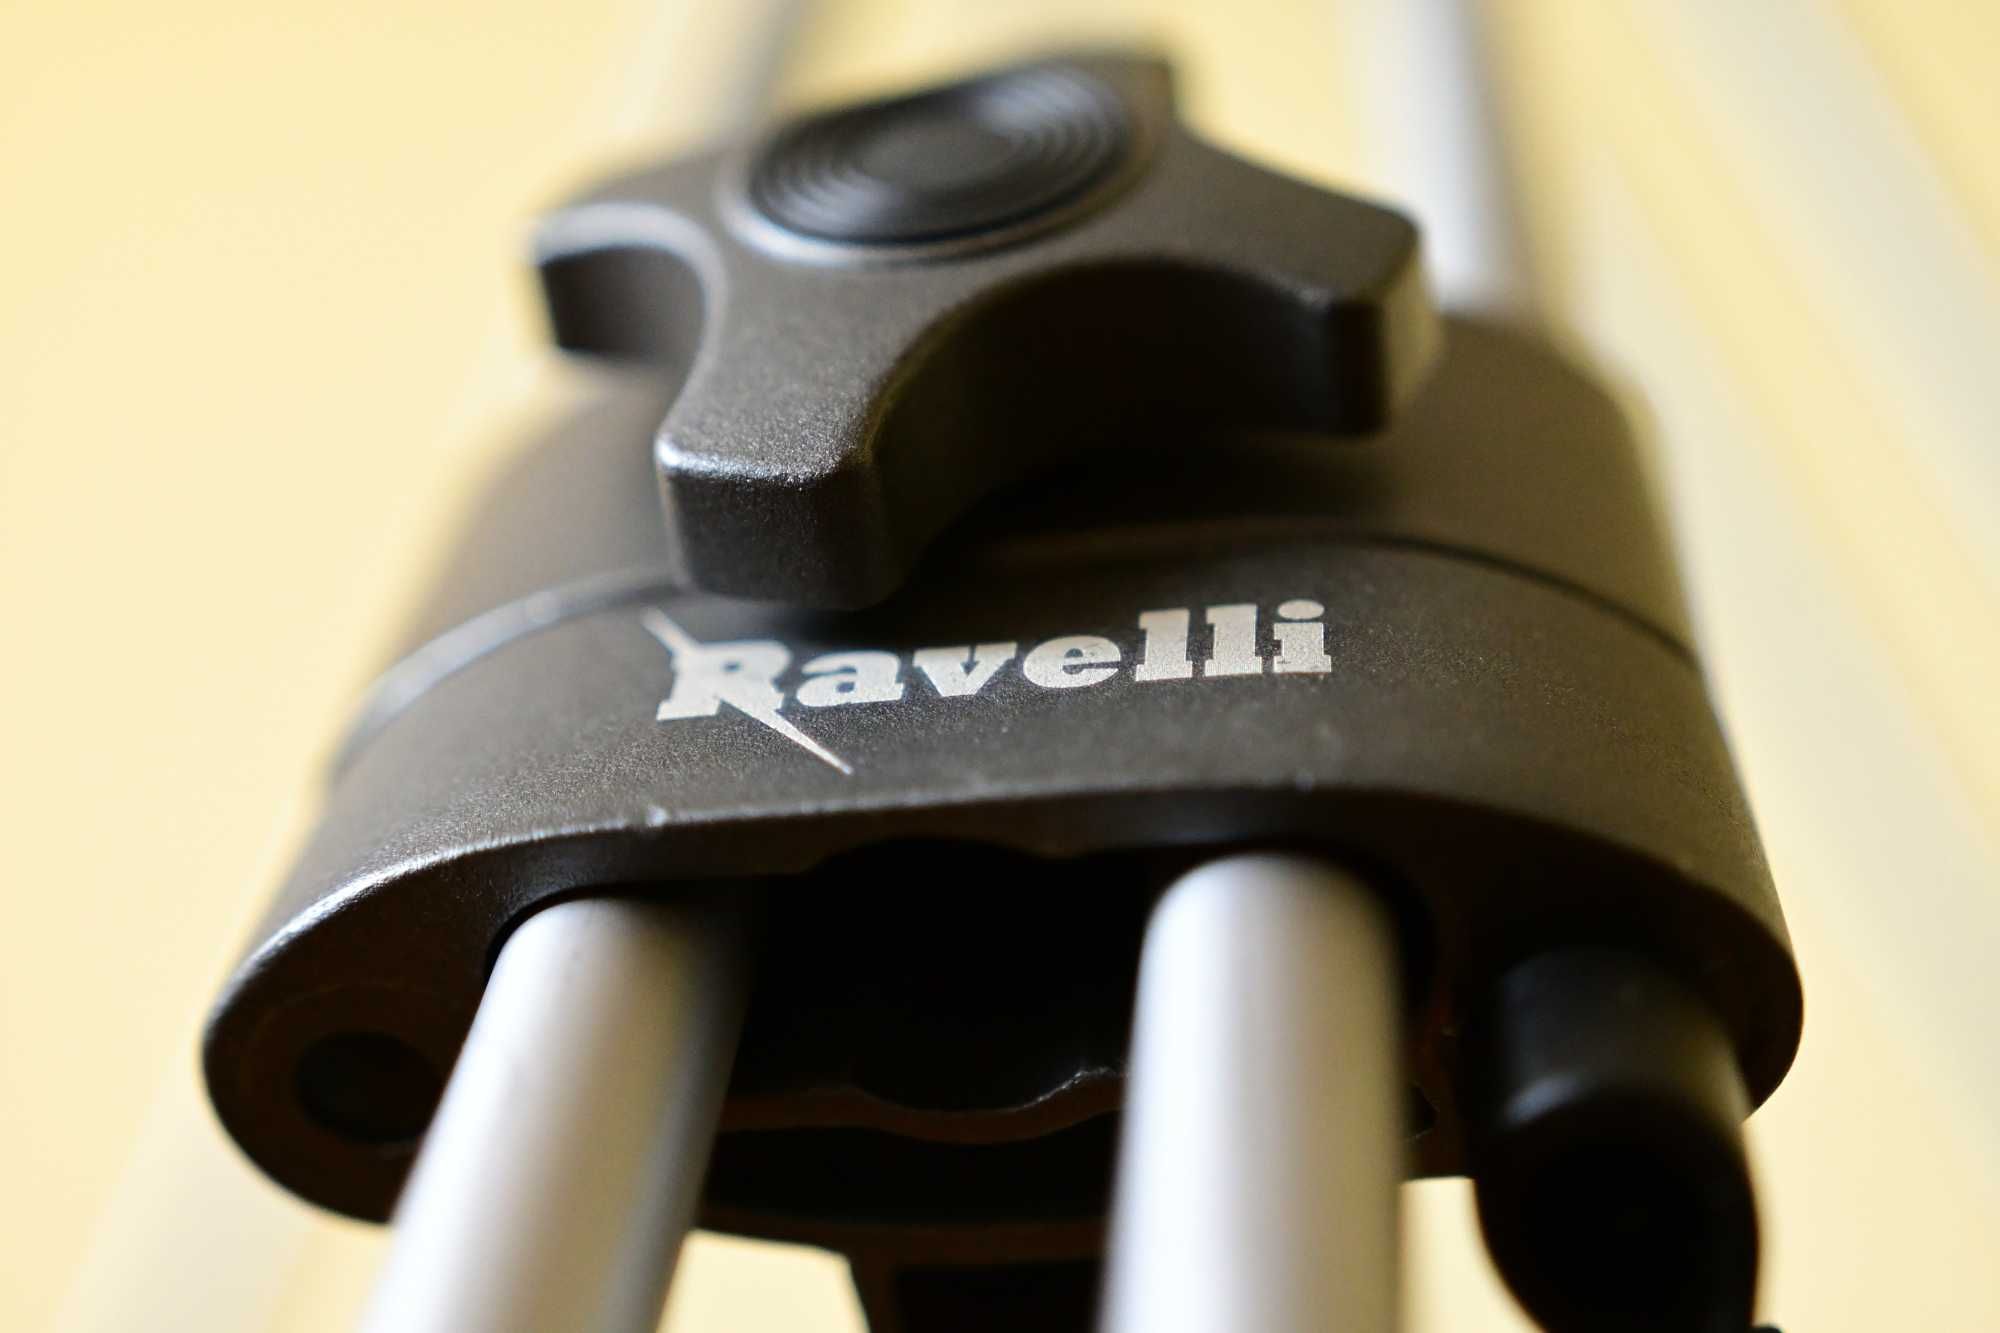 Potężny statyw Ravelli AVTP, płynna głowica, dwie rączki, pokrowiec